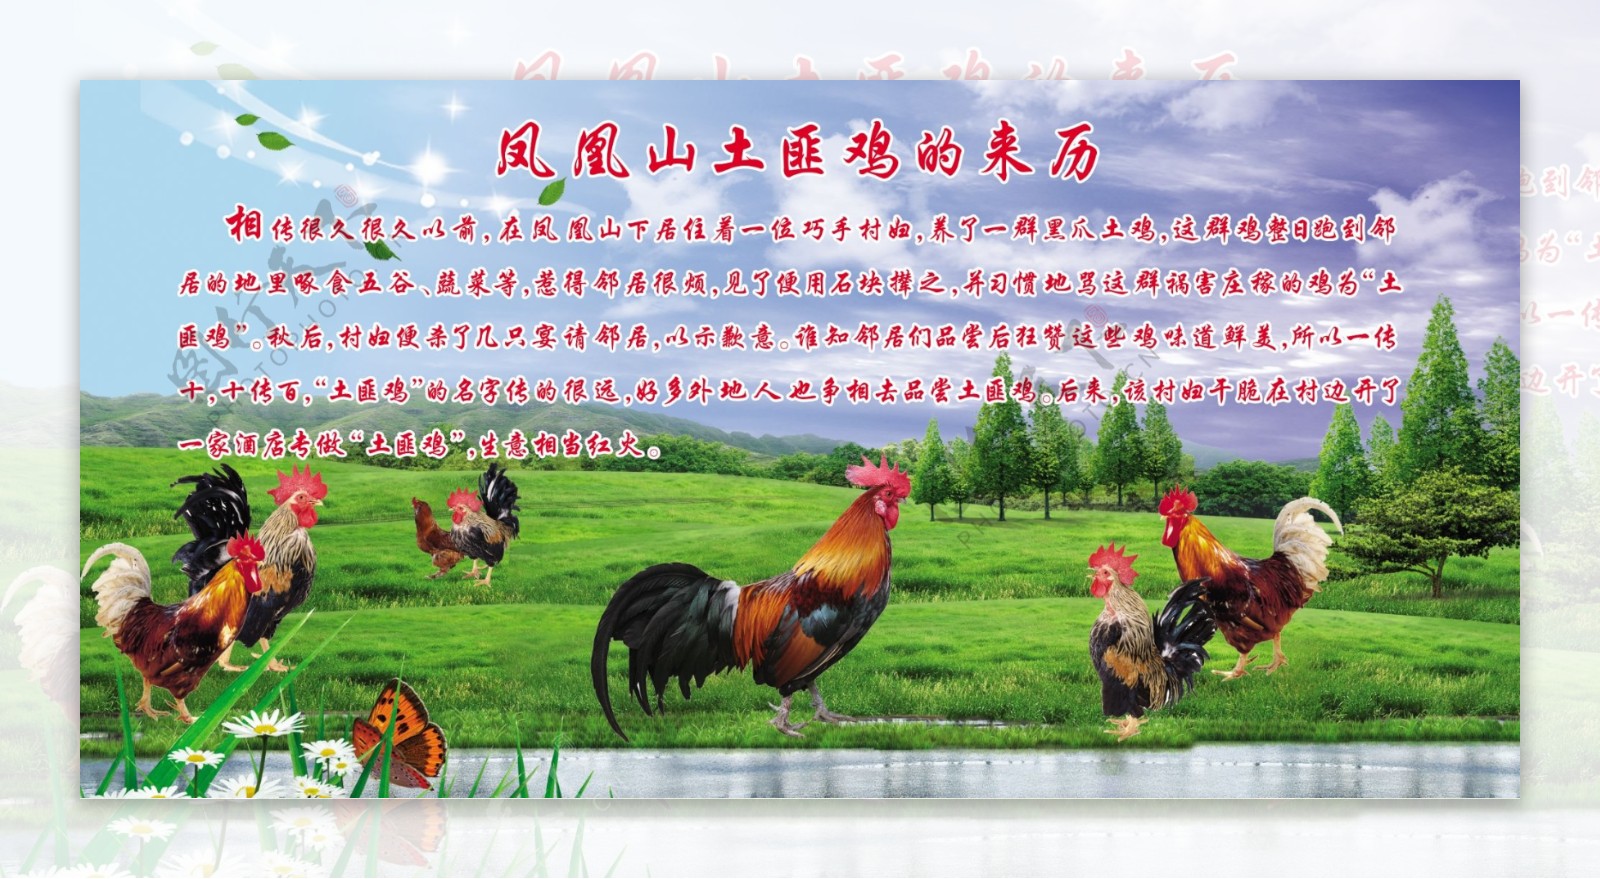 蓝天草原风景公鸡图片